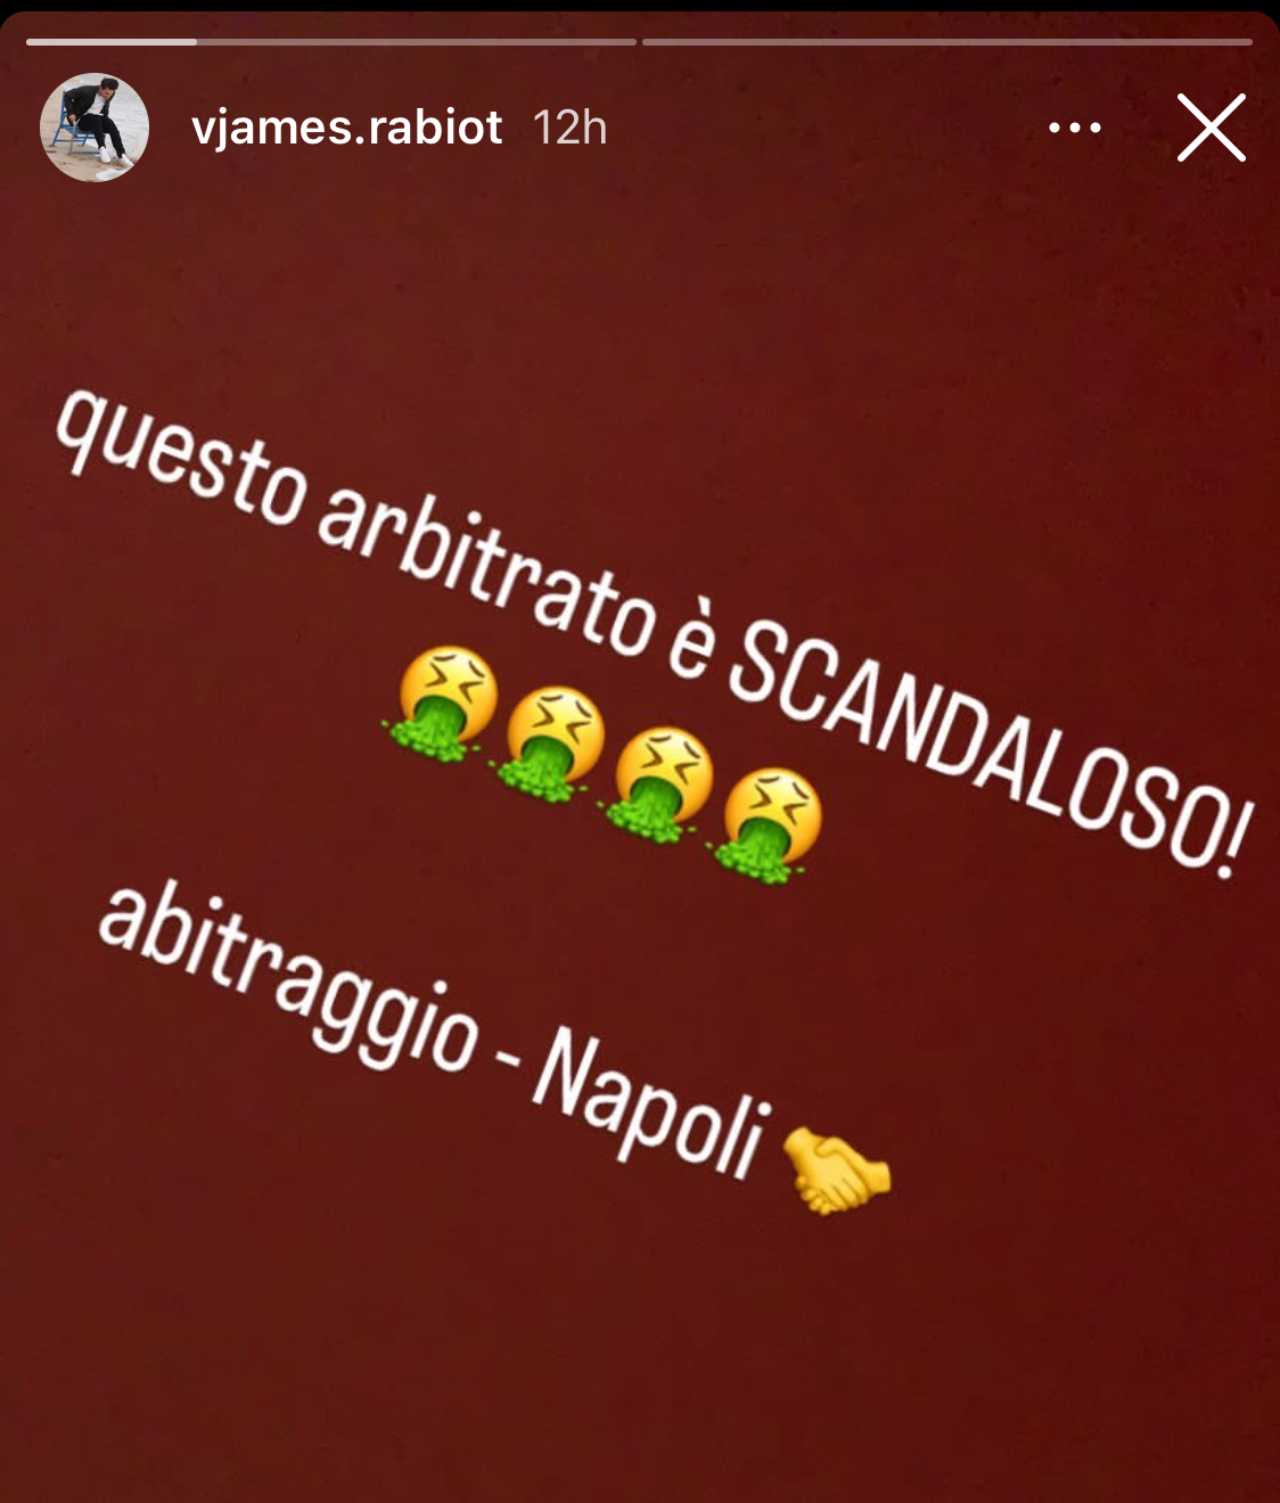 James Rabiot contro l'arbitro Fabbri Juventus Napoli (foto Instagram @vjames.rabiot) - Calcionow